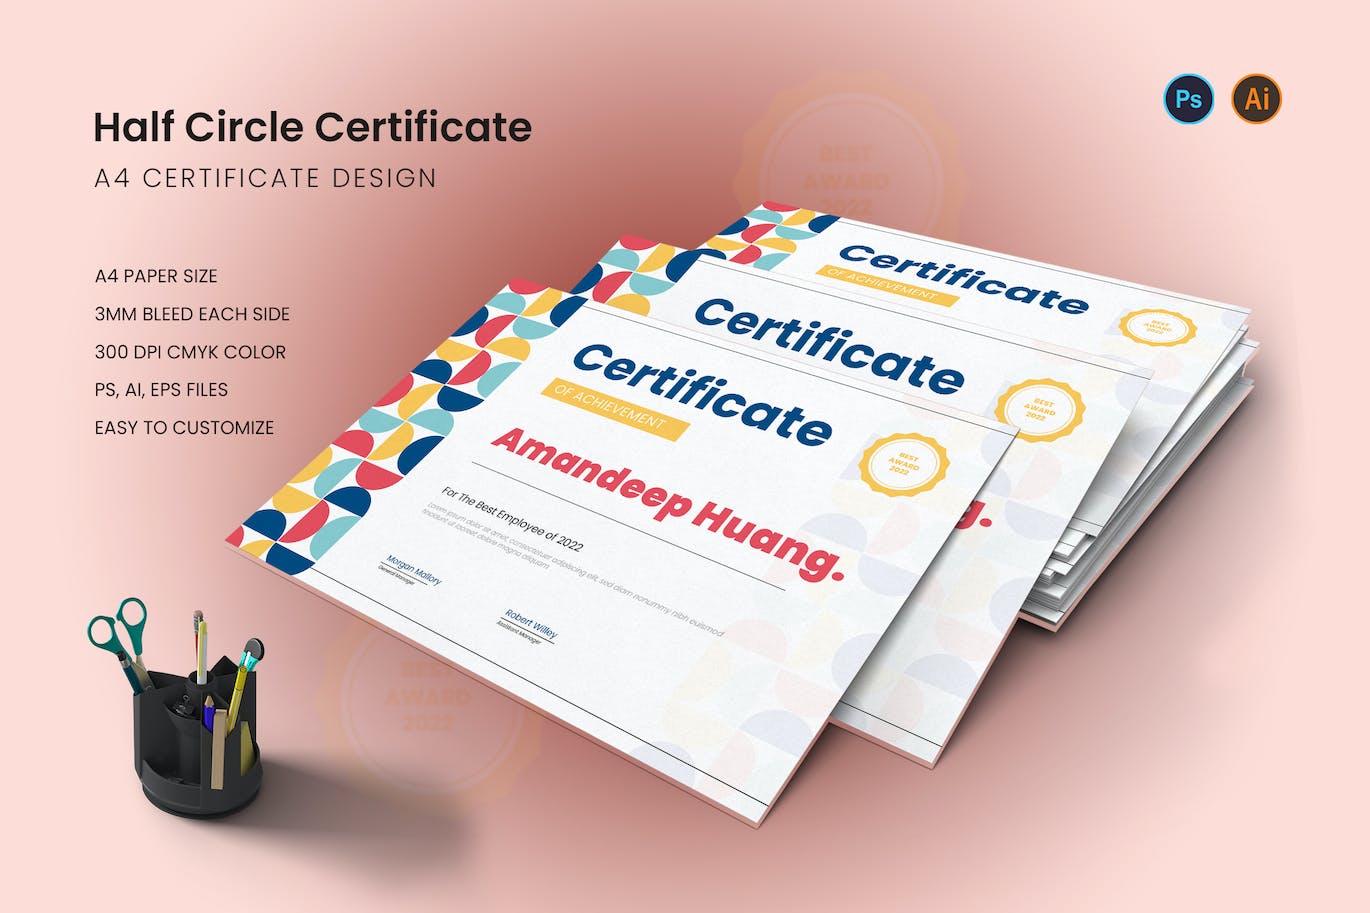 半圆几何专业证书封面设计模板 Half Circle Certificate 设计素材 第1张